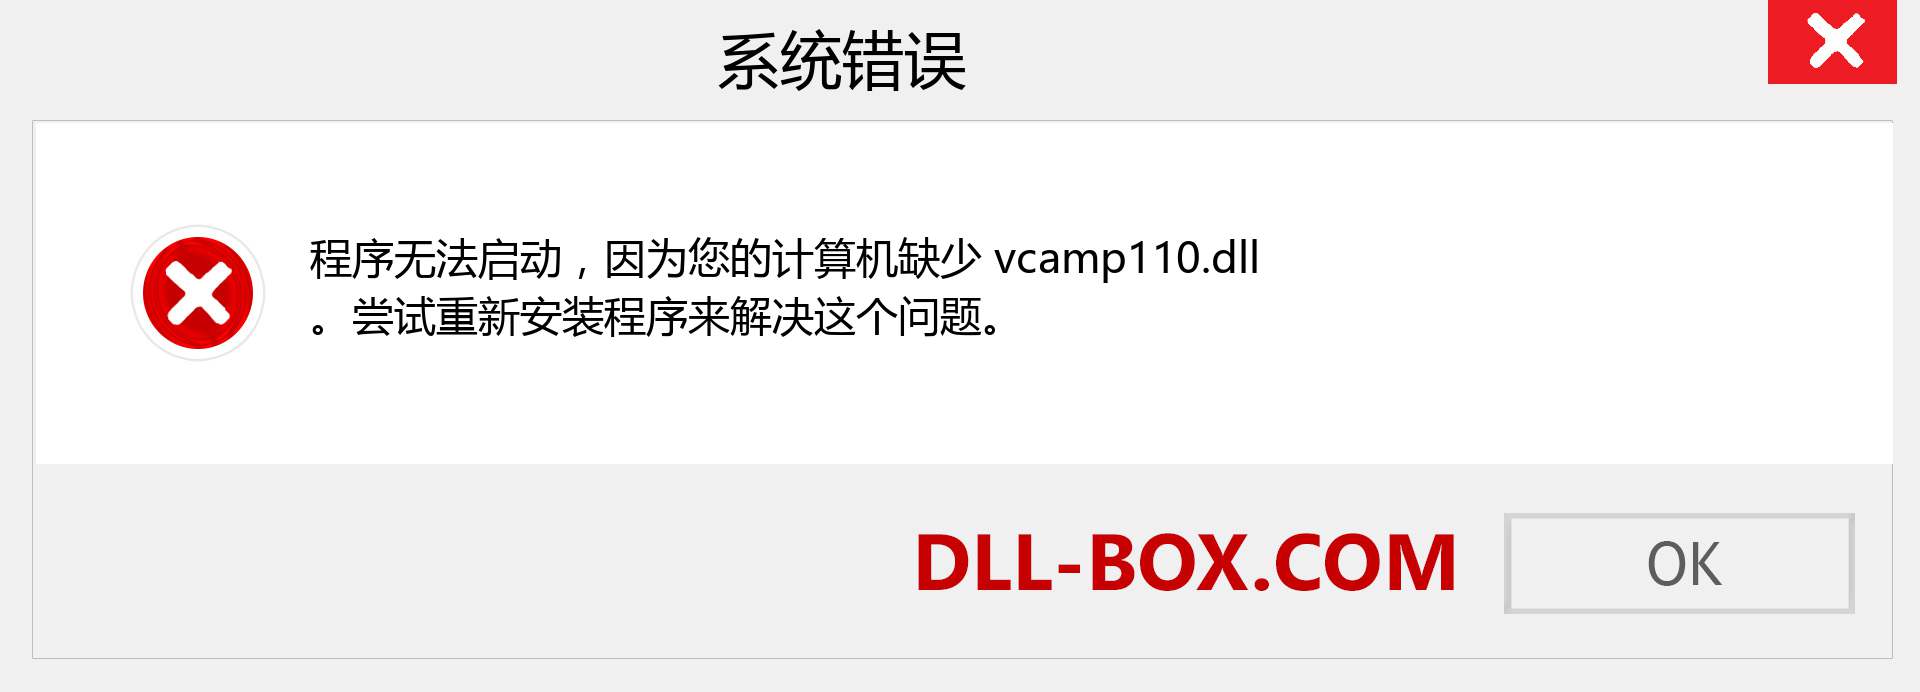 vcamp110.dll 文件丢失？。 适用于 Windows 7、8、10 的下载 - 修复 Windows、照片、图像上的 vcamp110 dll 丢失错误